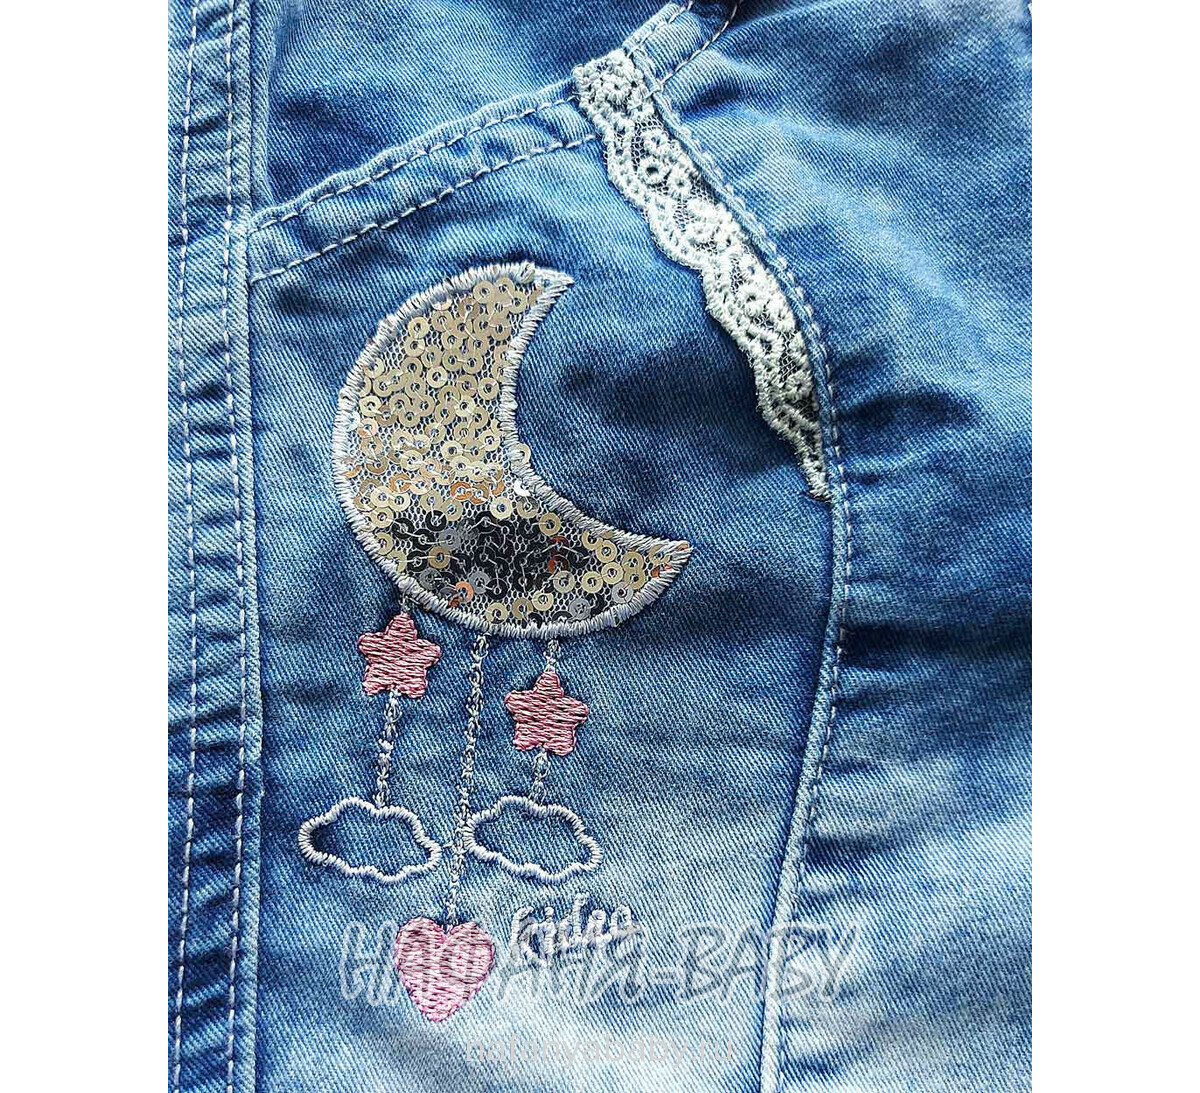 Детские джинсовые капри KIDEA арт: 411, 1-4 года, цвет синий, оптом Турция